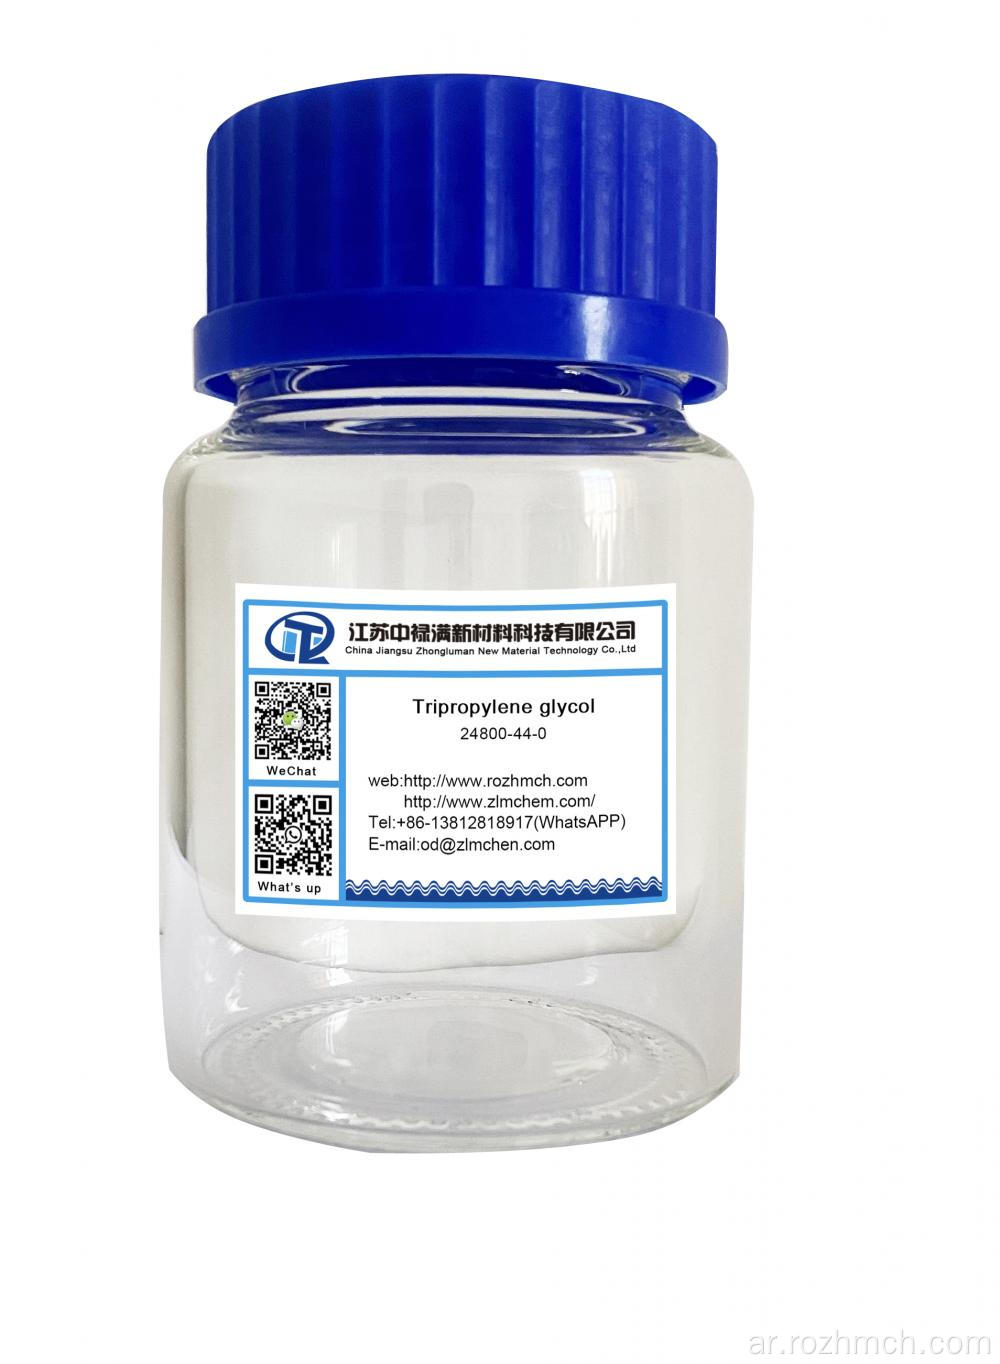 Tripropylene Glycol CAS NO 24800-44-0